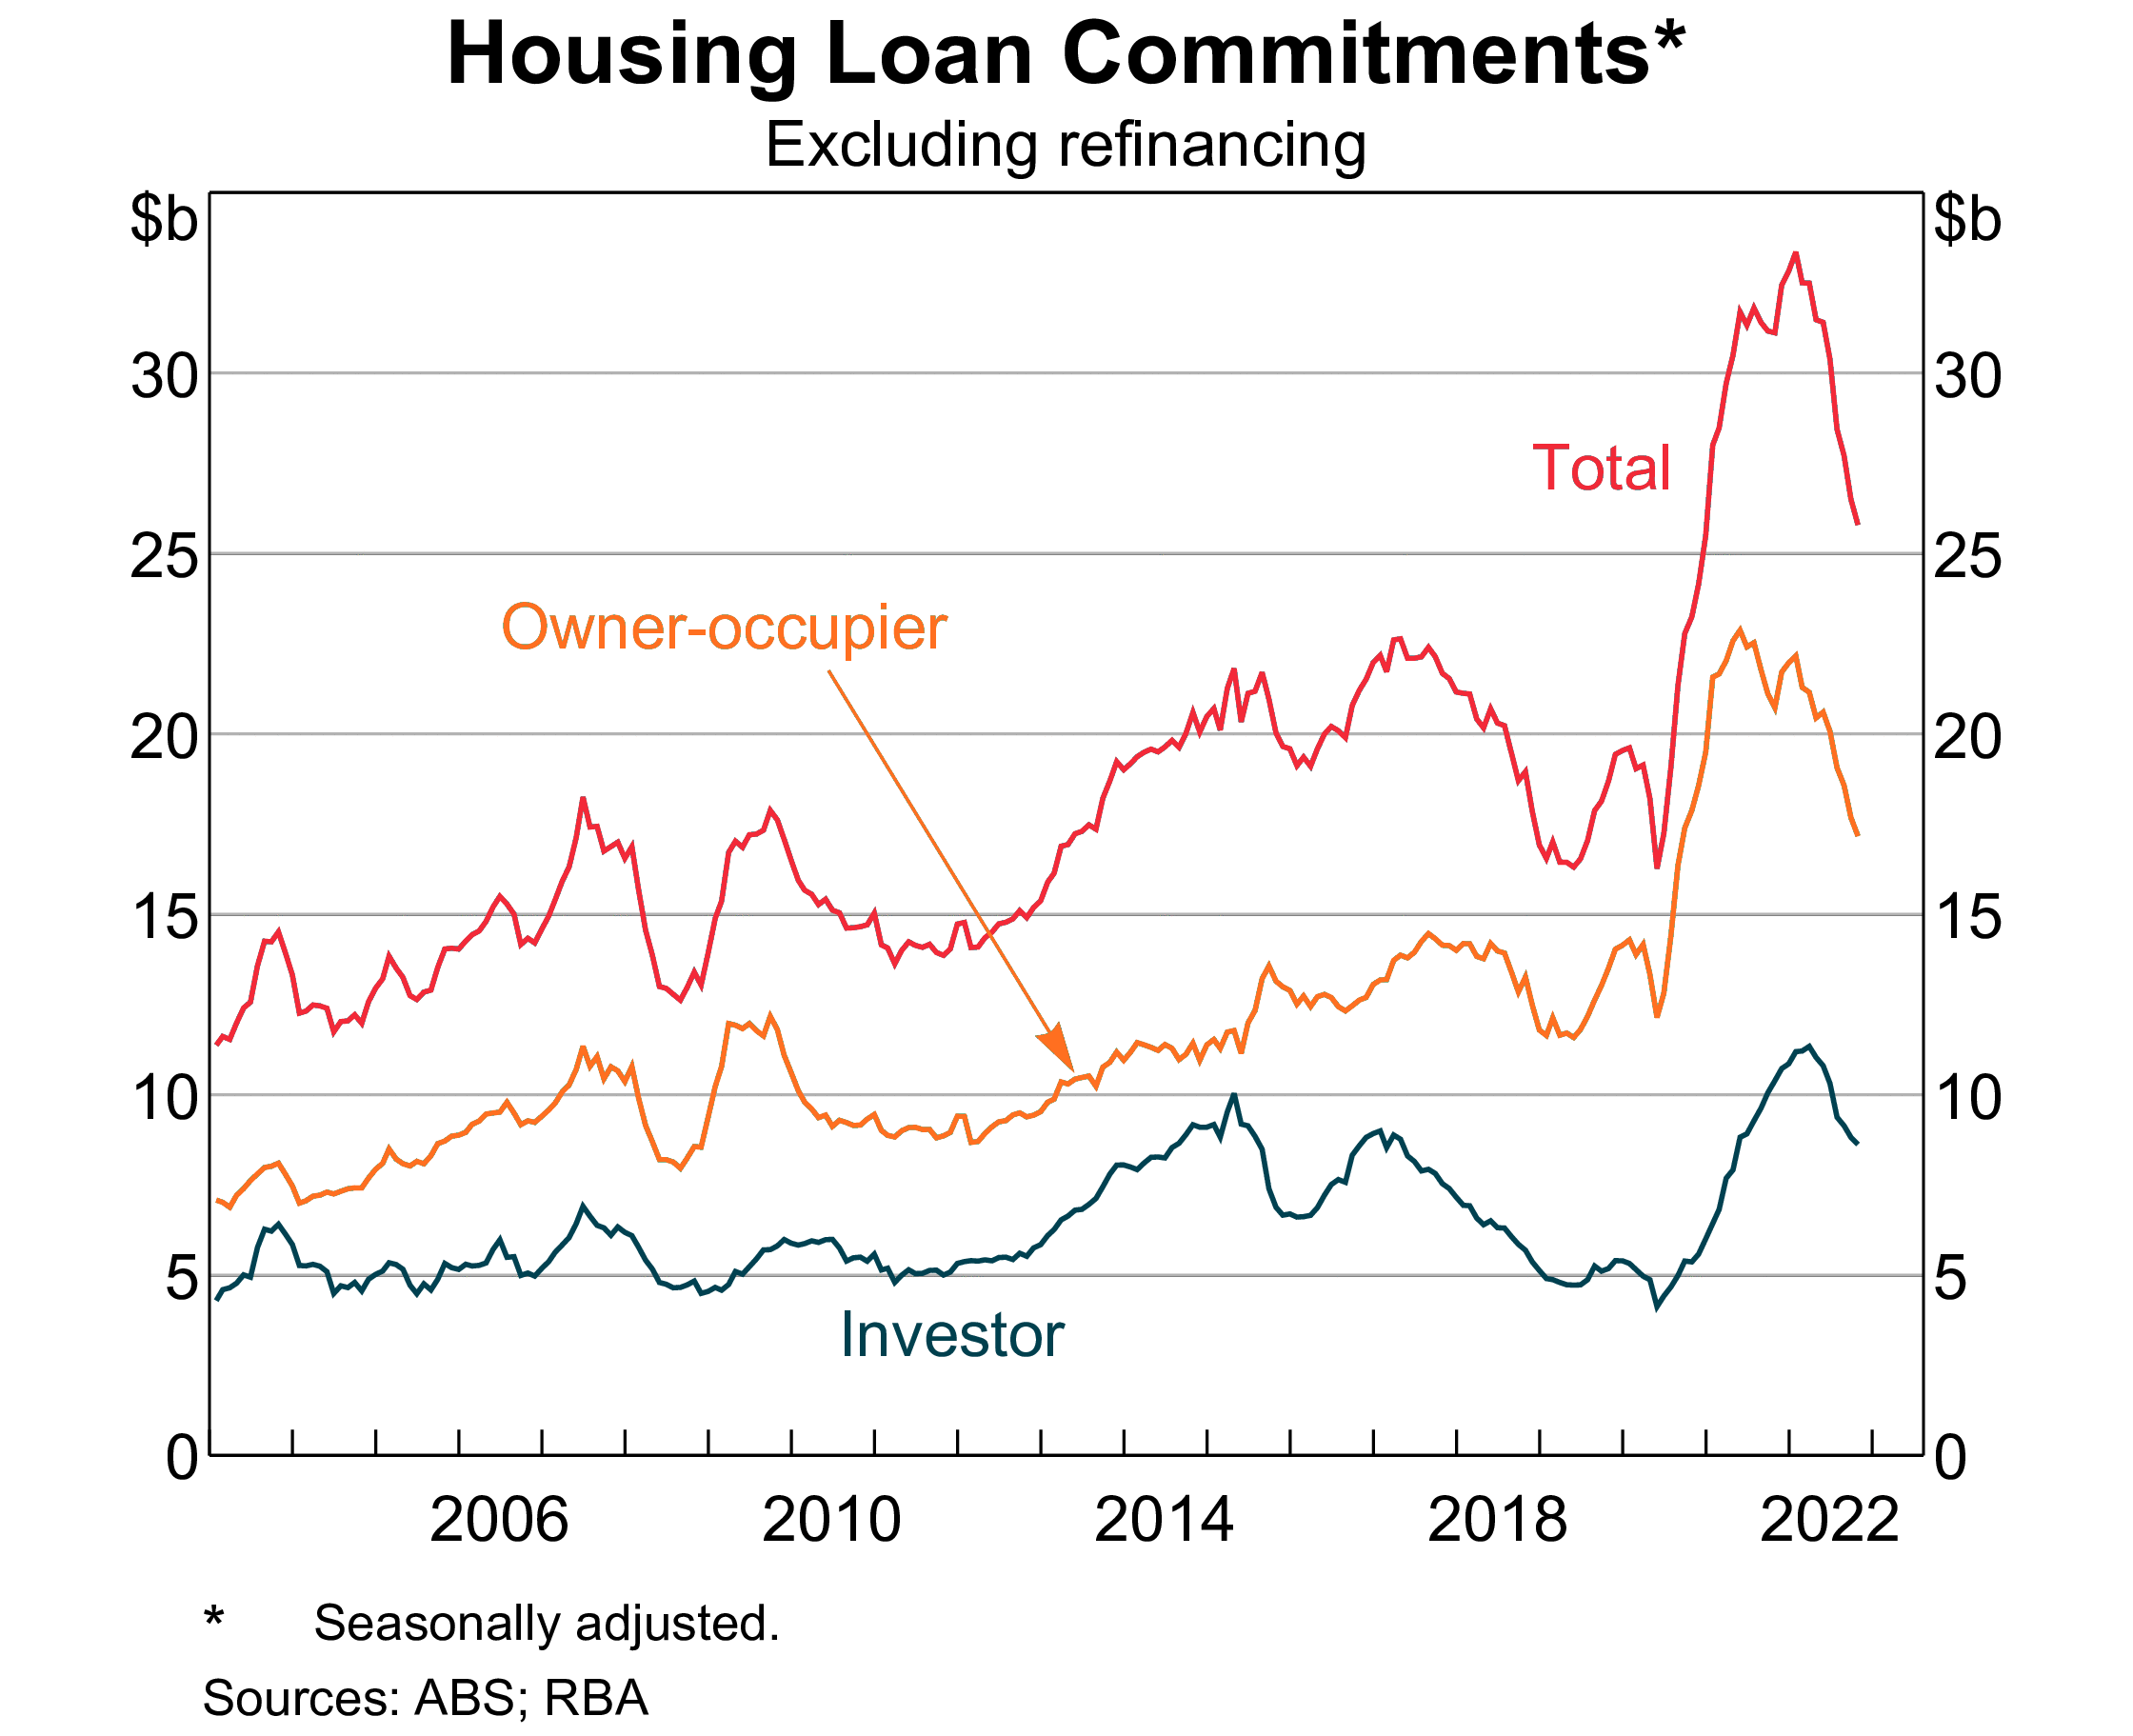 Housing loans